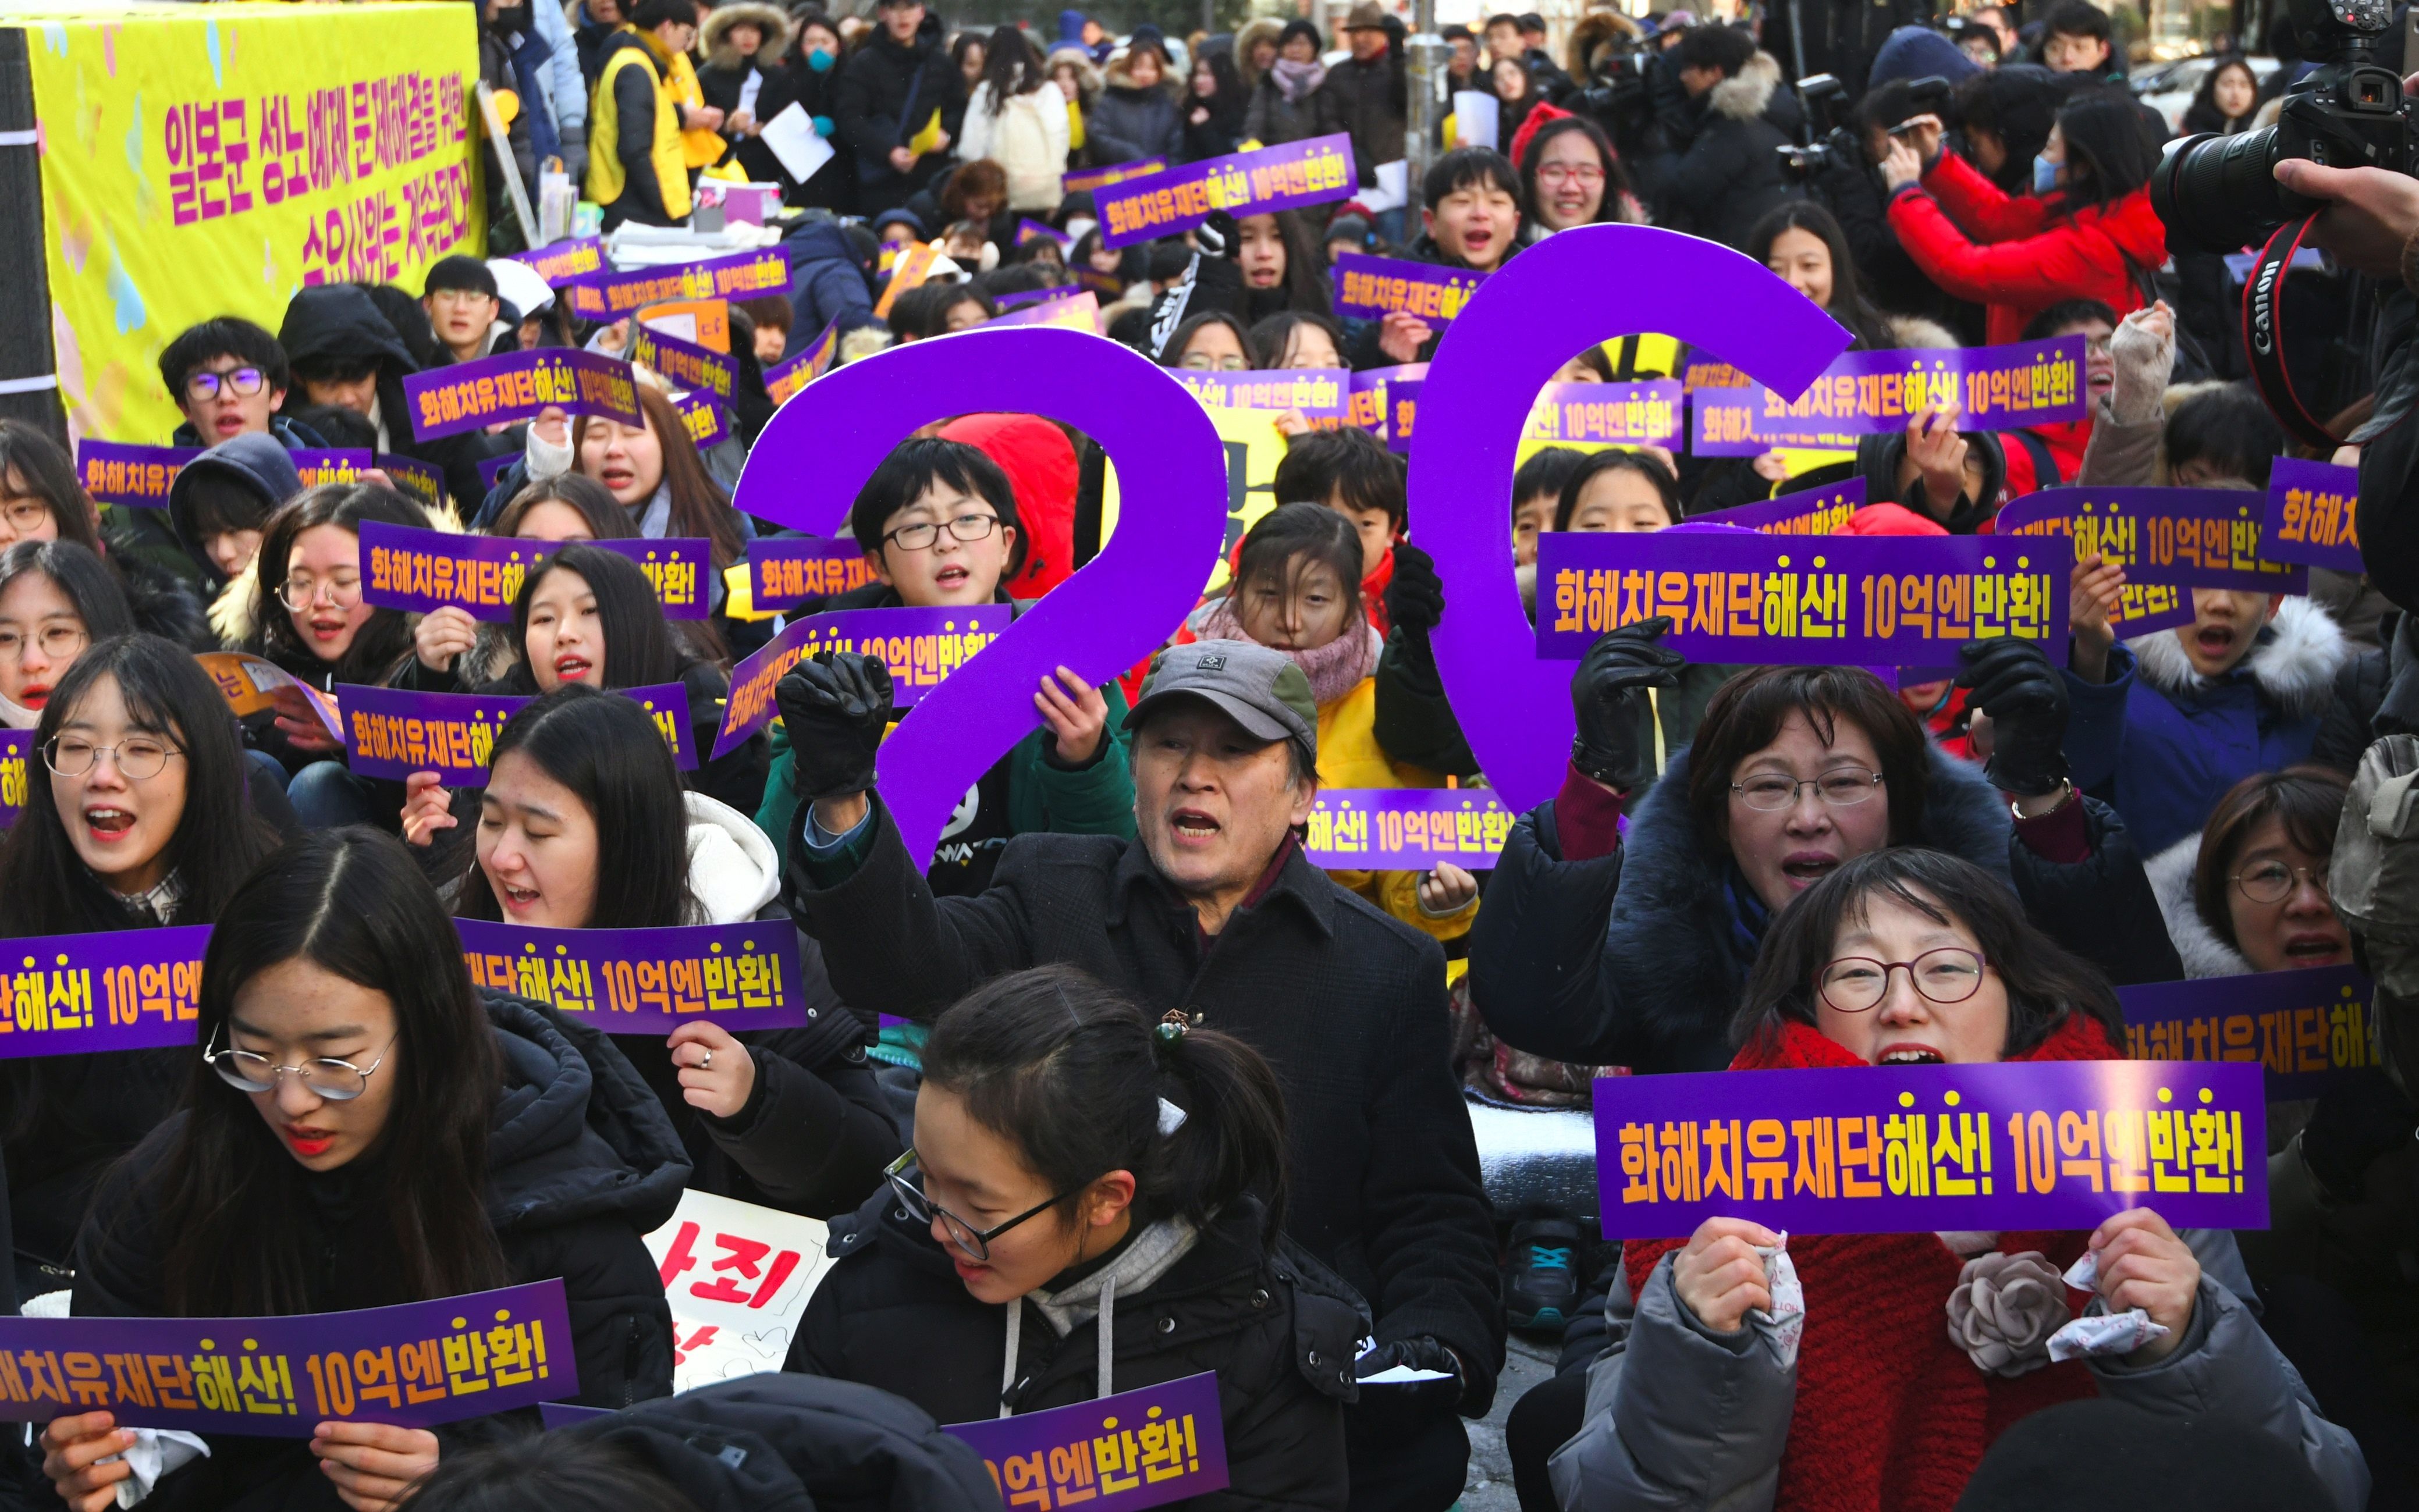 مظاهرات فى كوريا الجنوبية لدعم ضحايا "نساء المتعة"